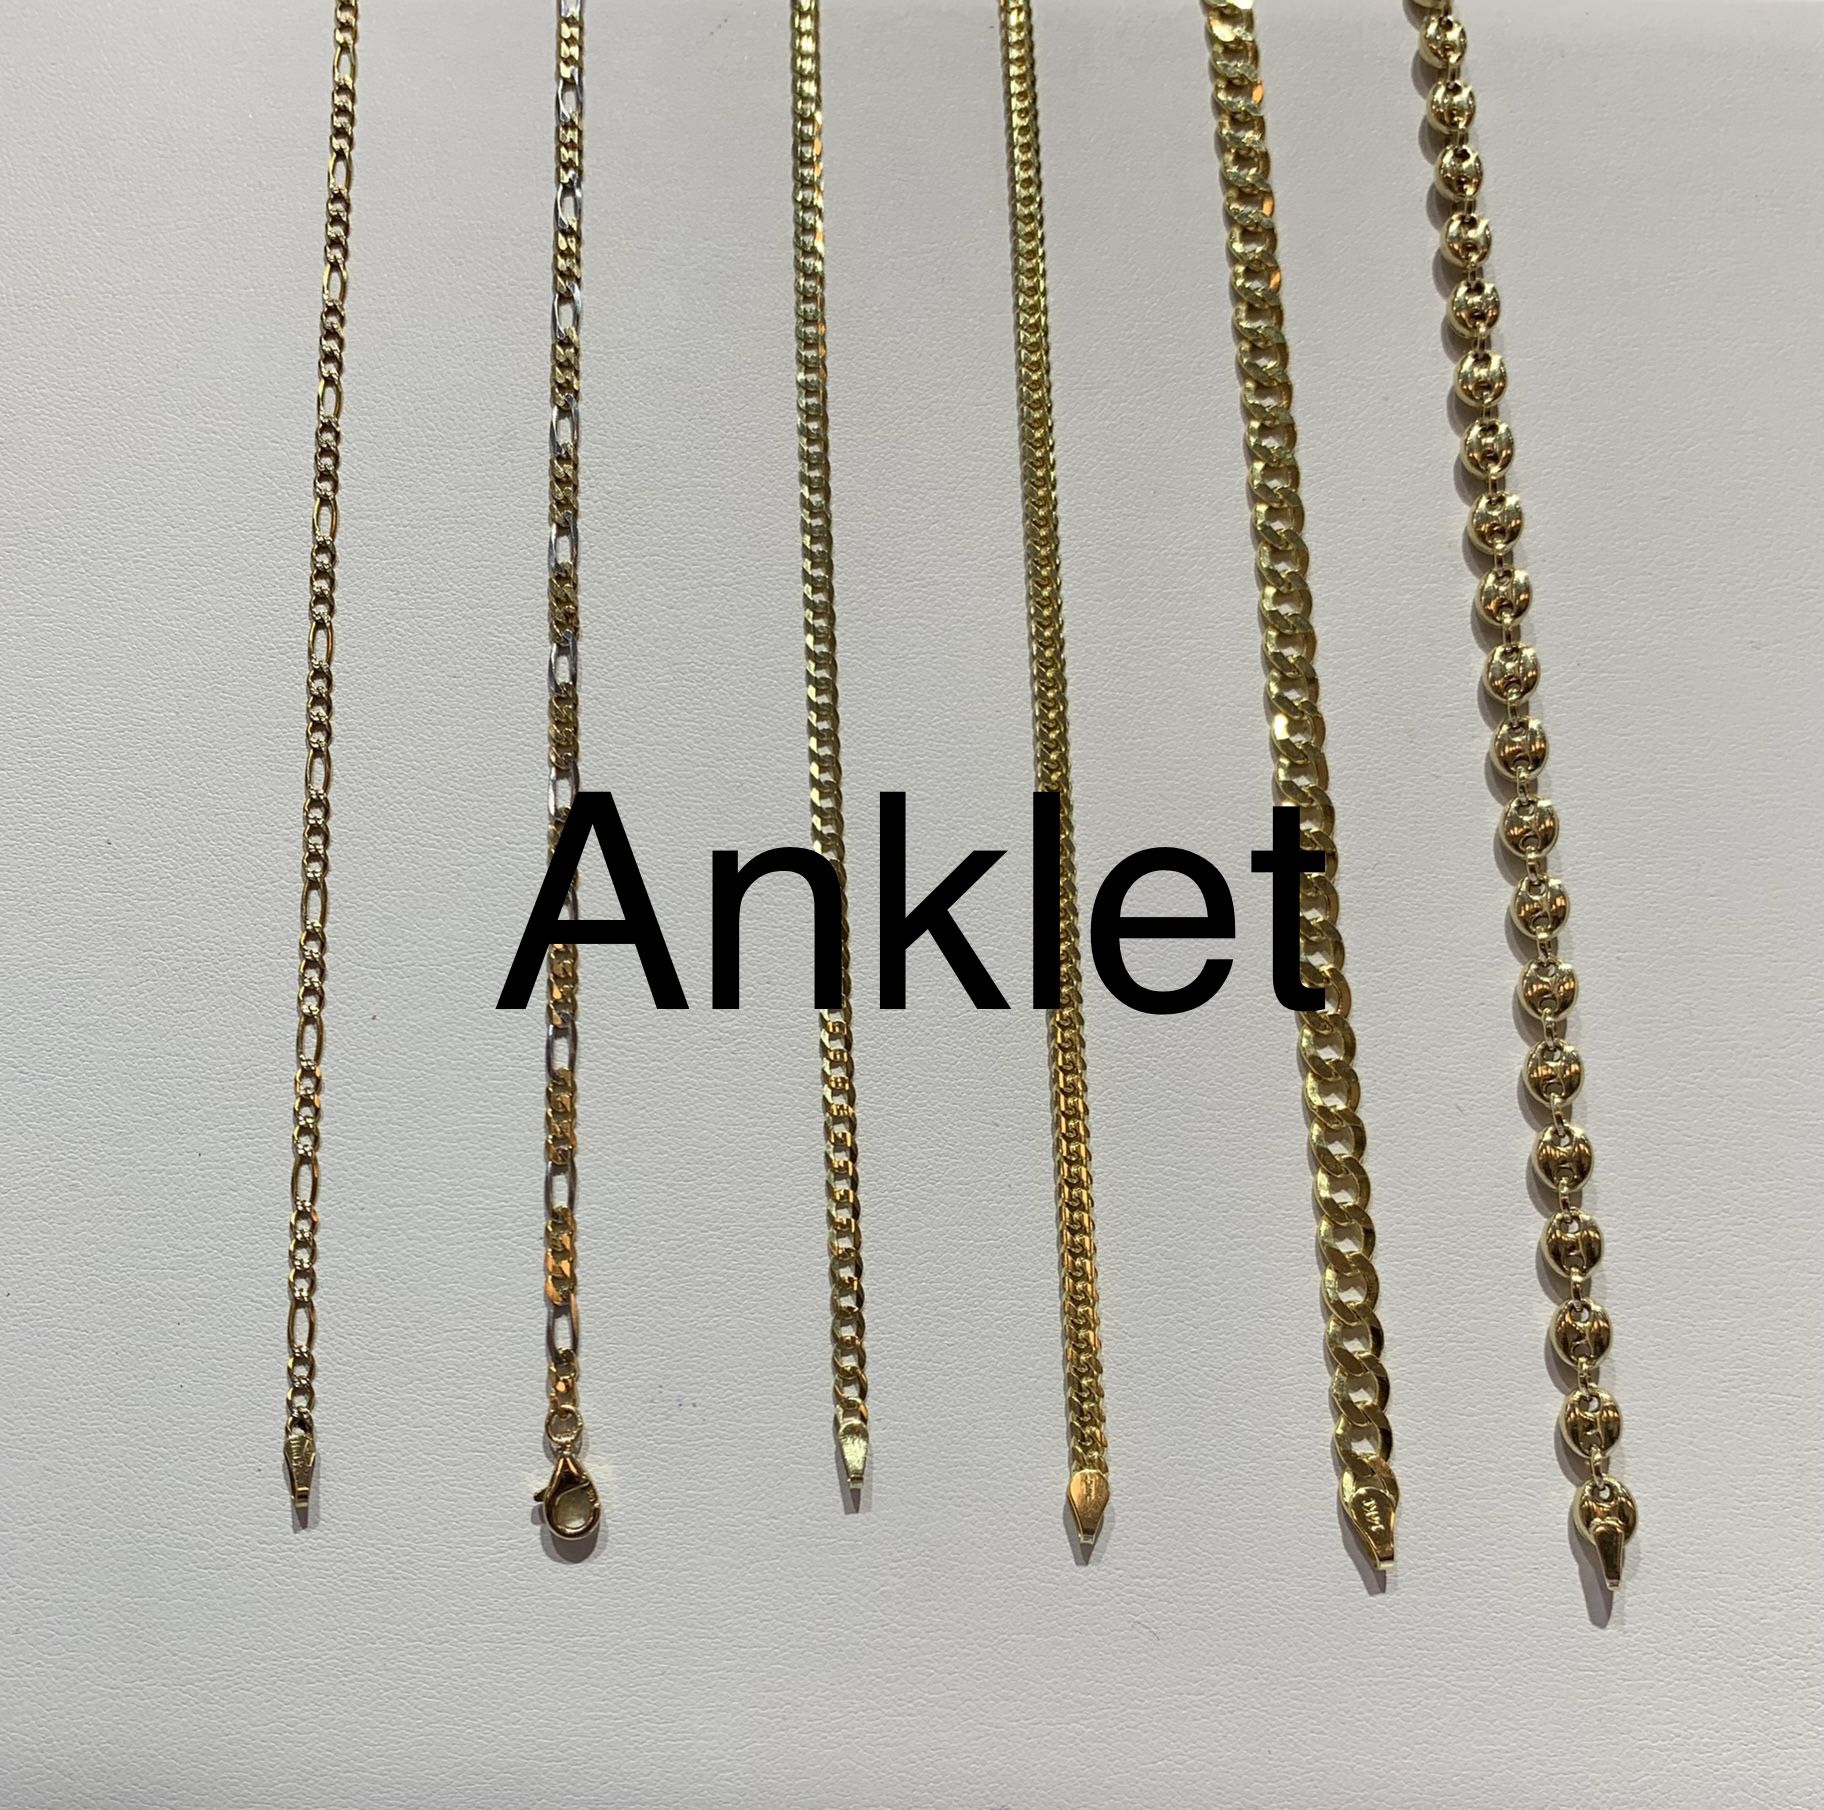 14 karat solid gold ankle anklet bracelet 10 inches long